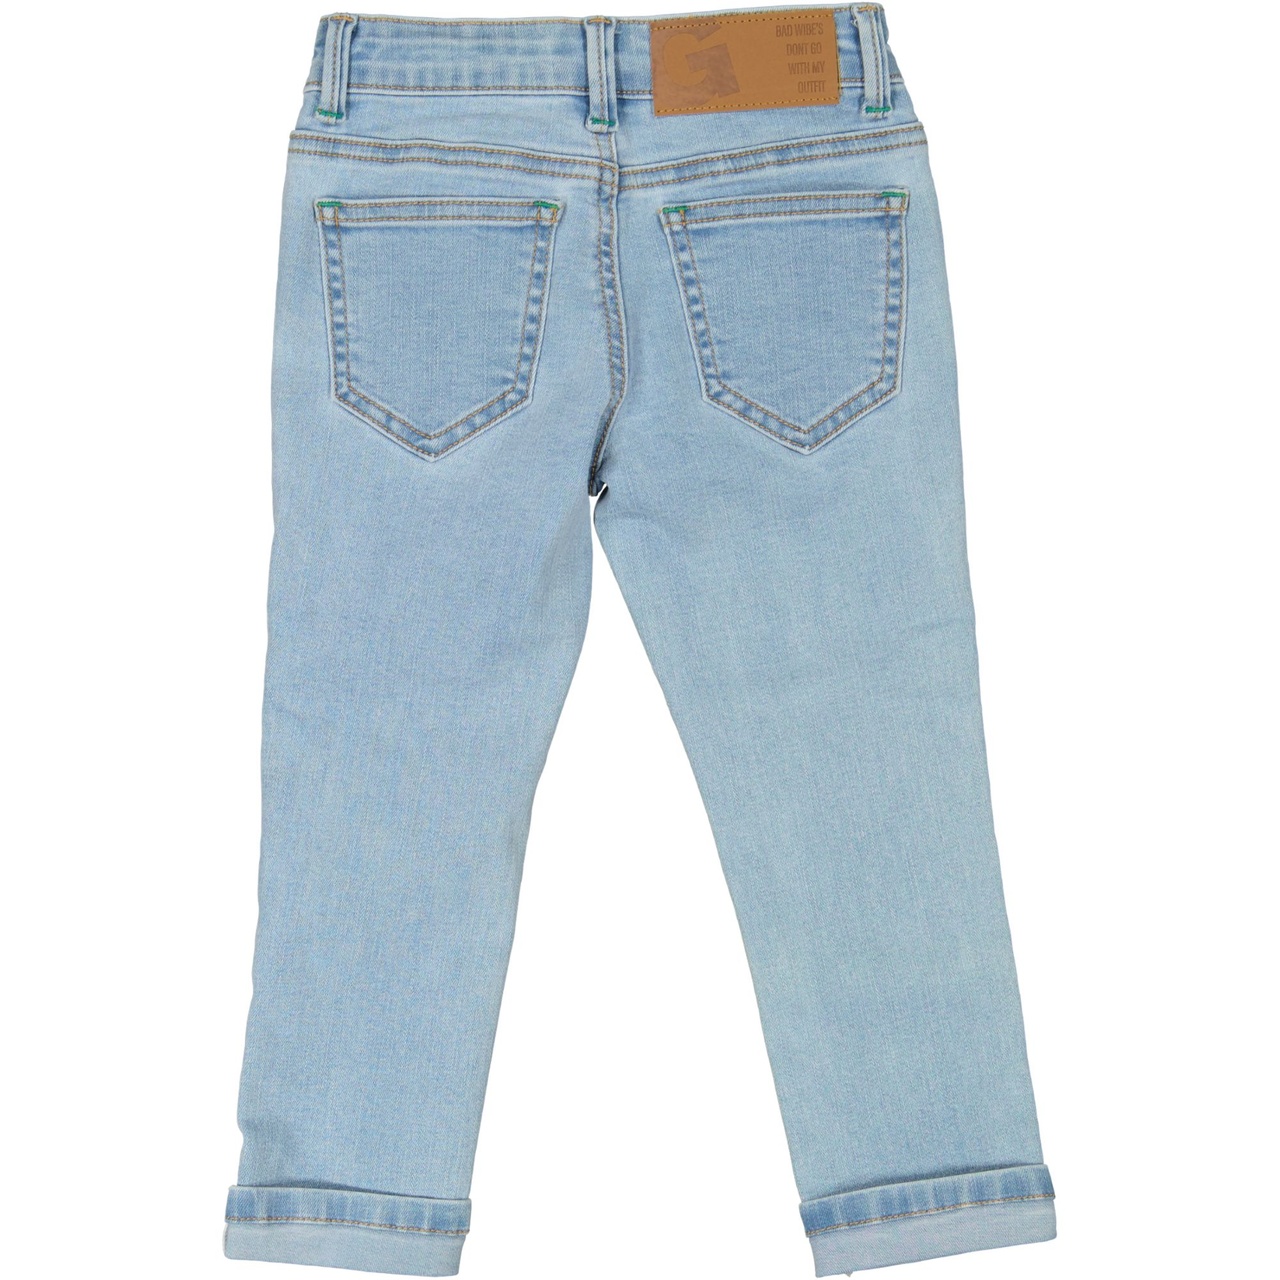 Unisex 5-pocket jeans Denim l.blue wash 122/128